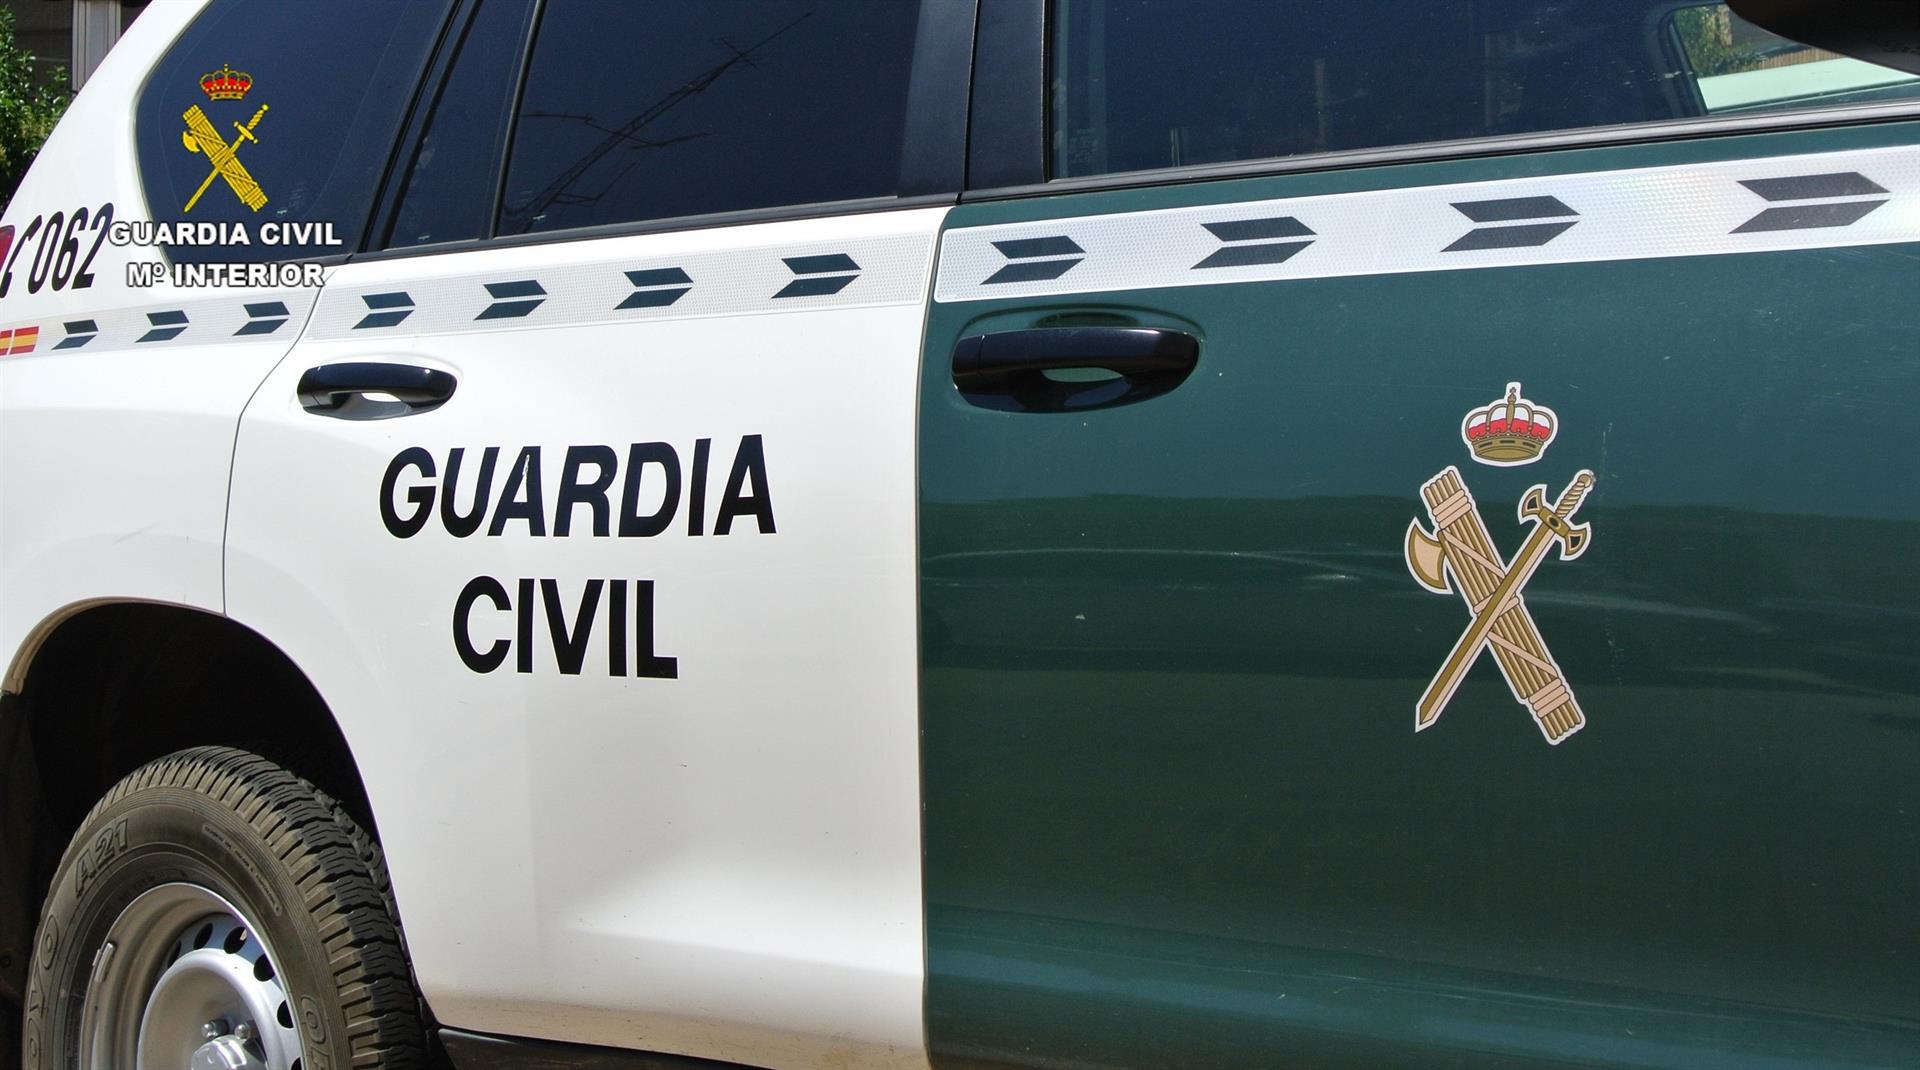 La Guardia Civil investiga la actuación de los agentes en el caso de Liaño